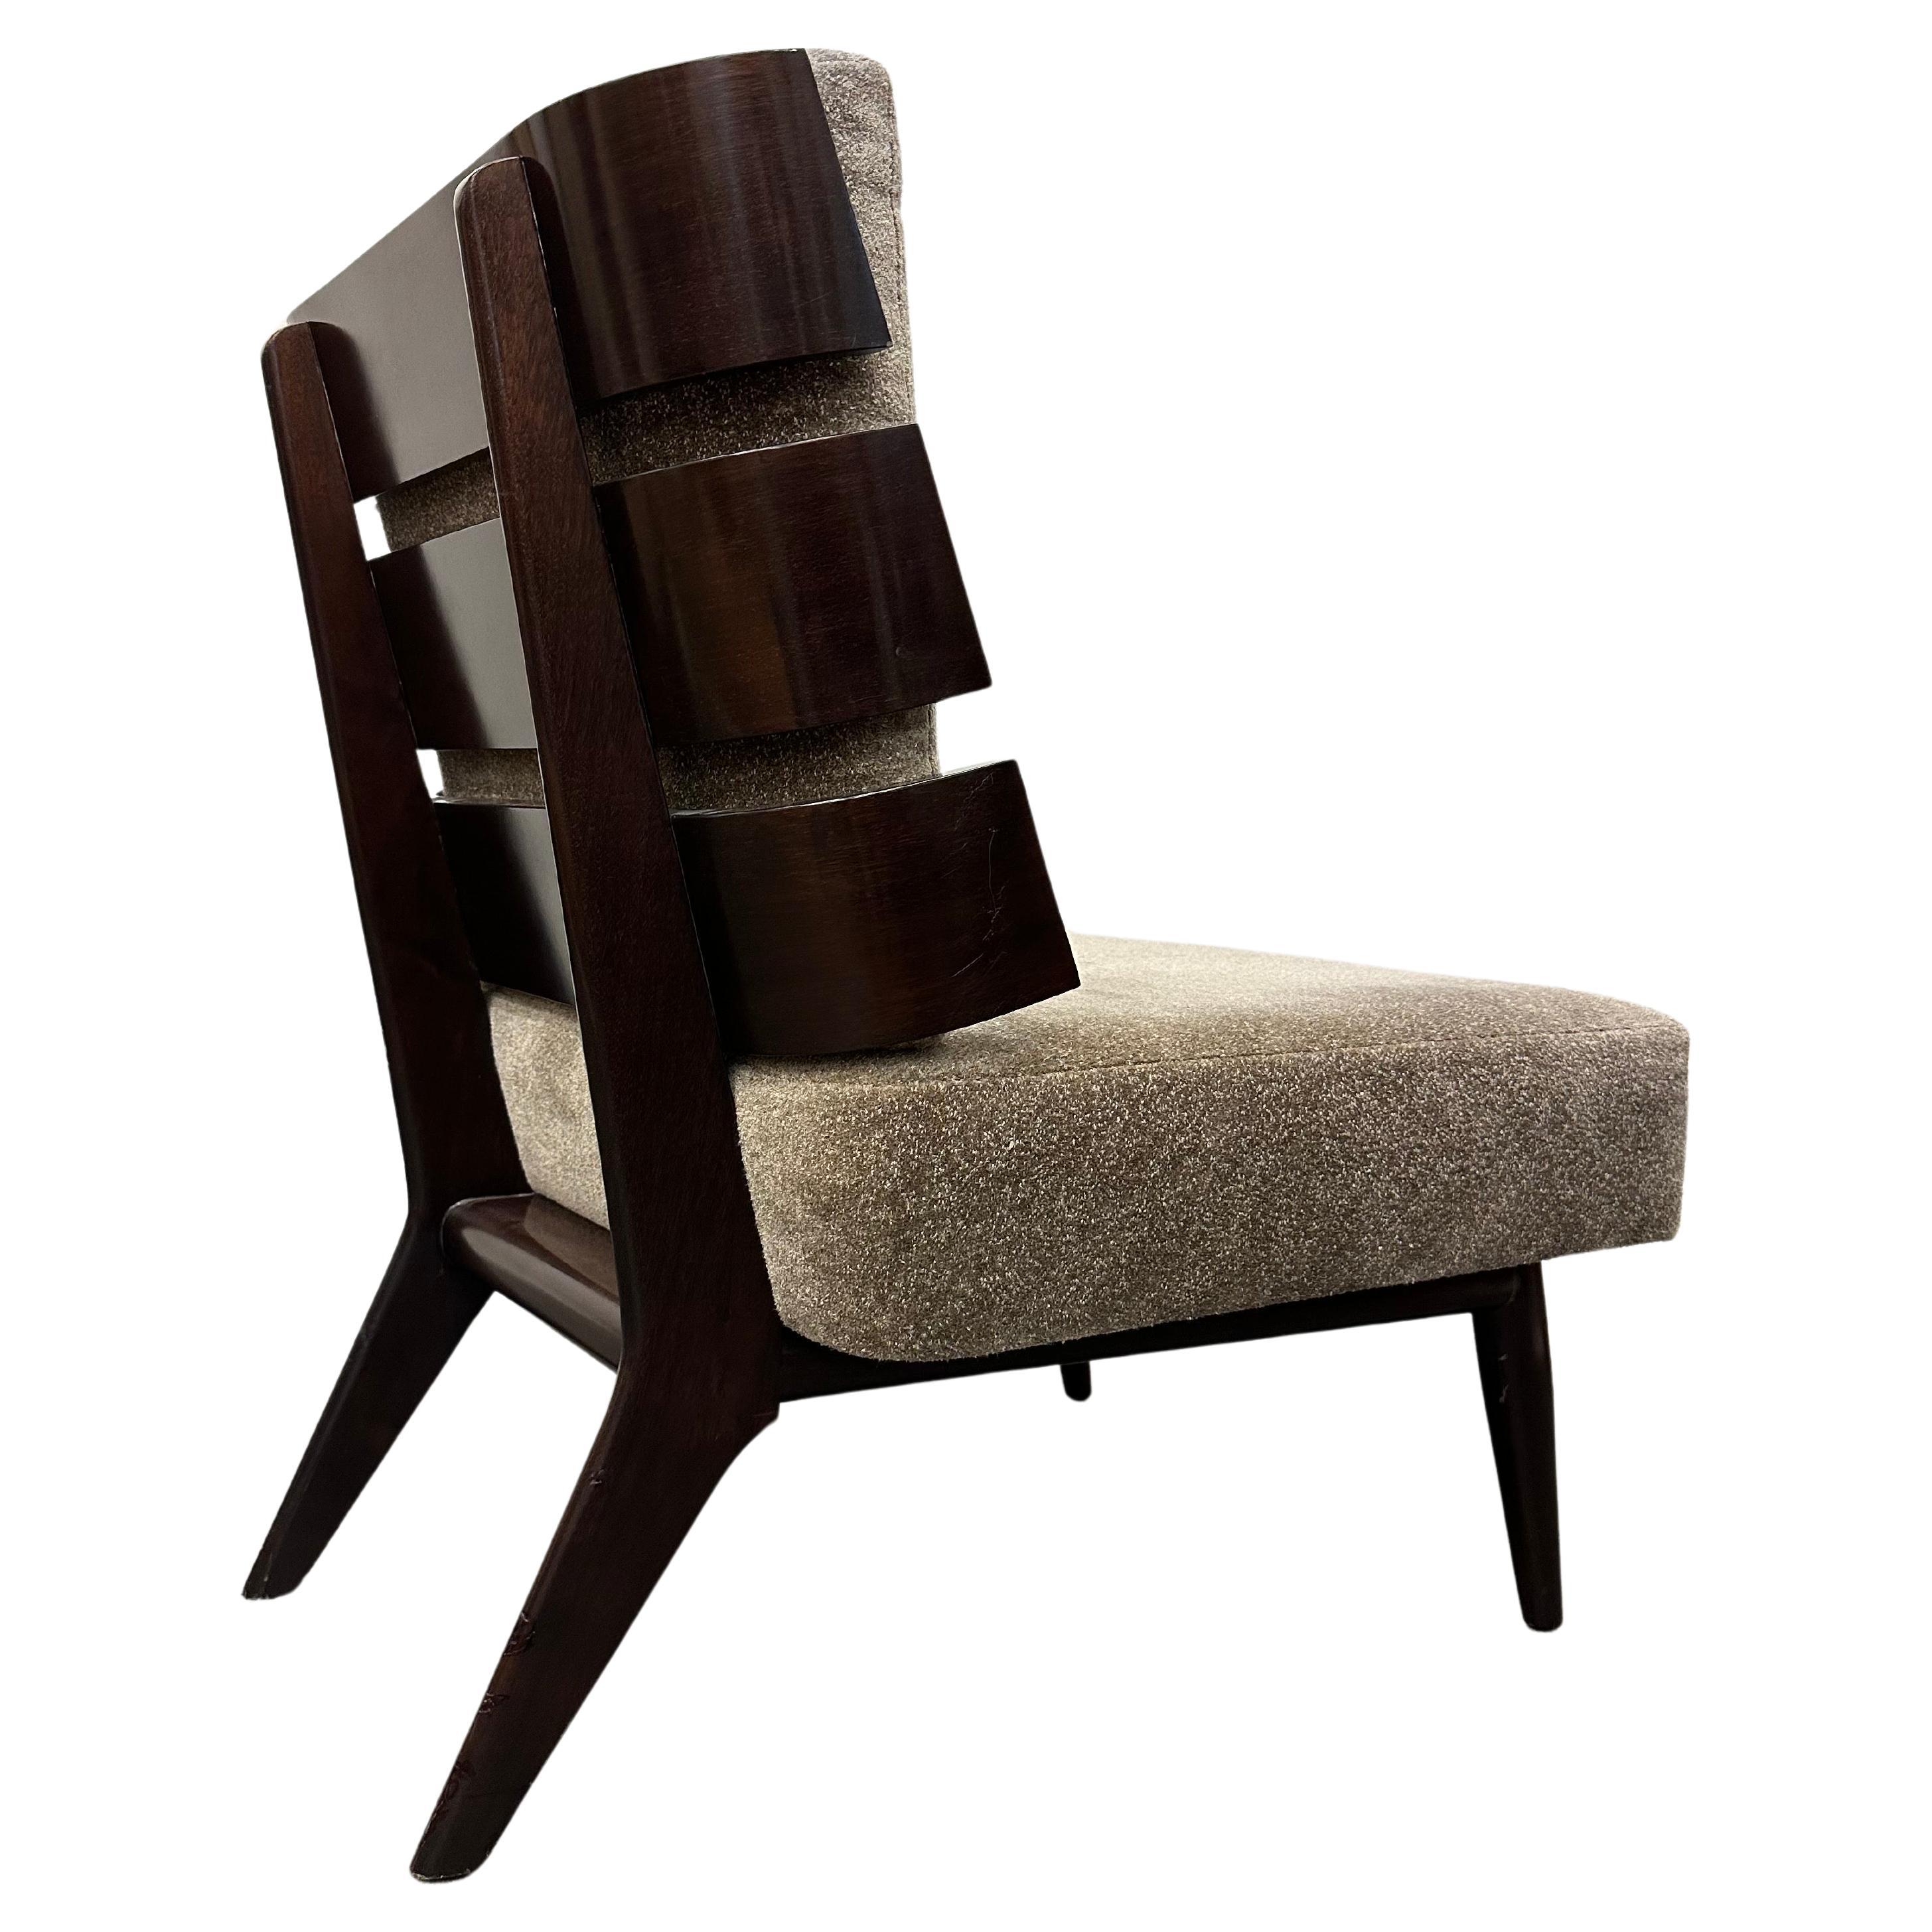 Rare T. H. Robsjohn-Gibbings Walnut Slat Back Chair For Sale